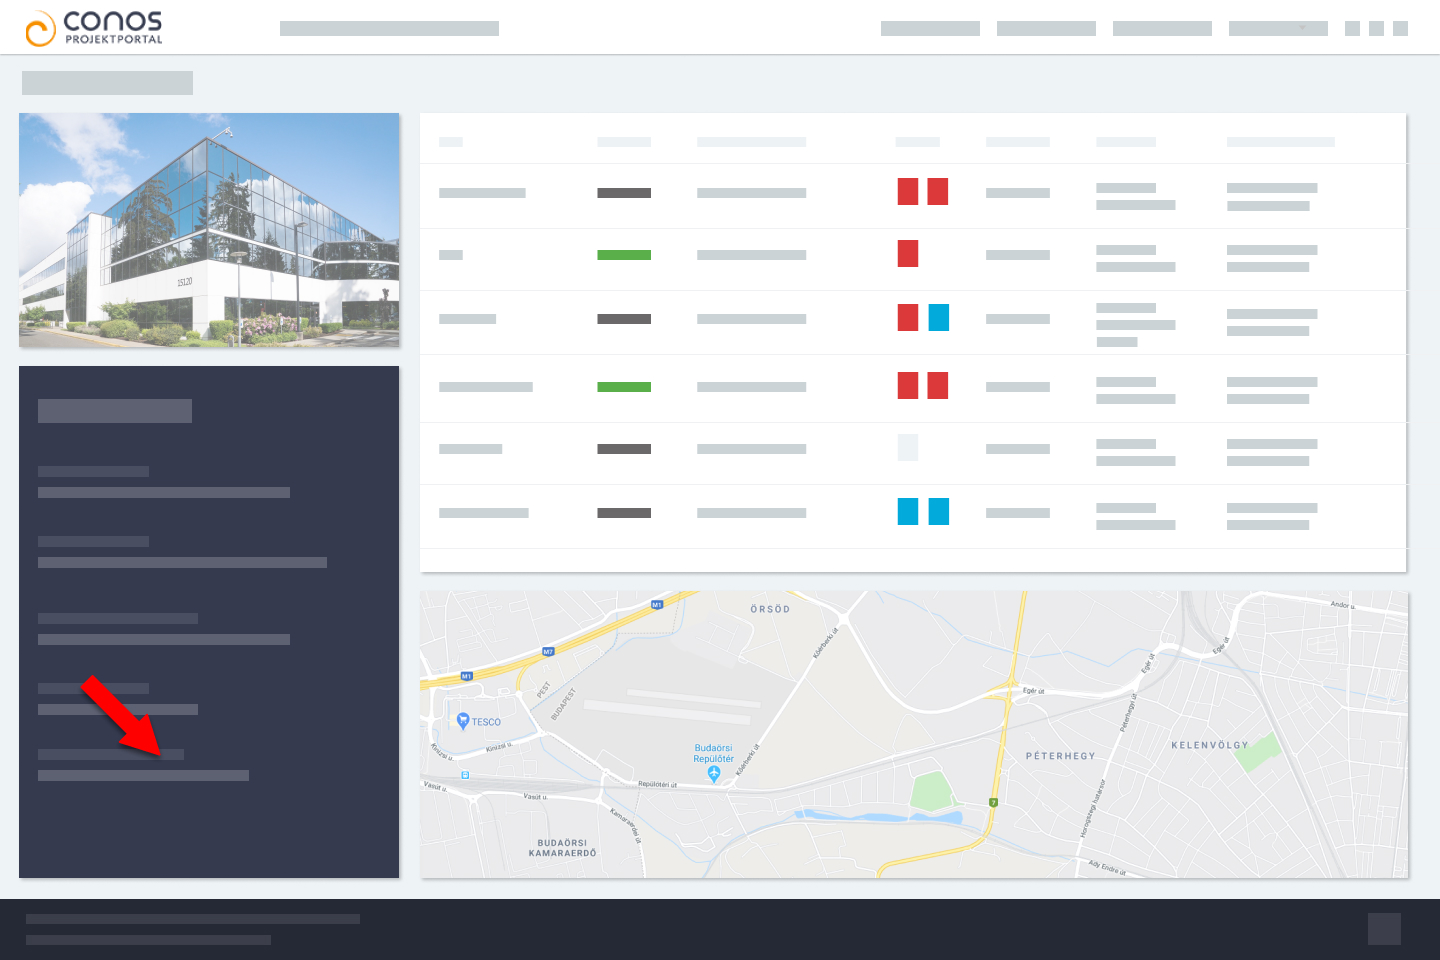 Conos ProjektPortal Project Information page screenshot